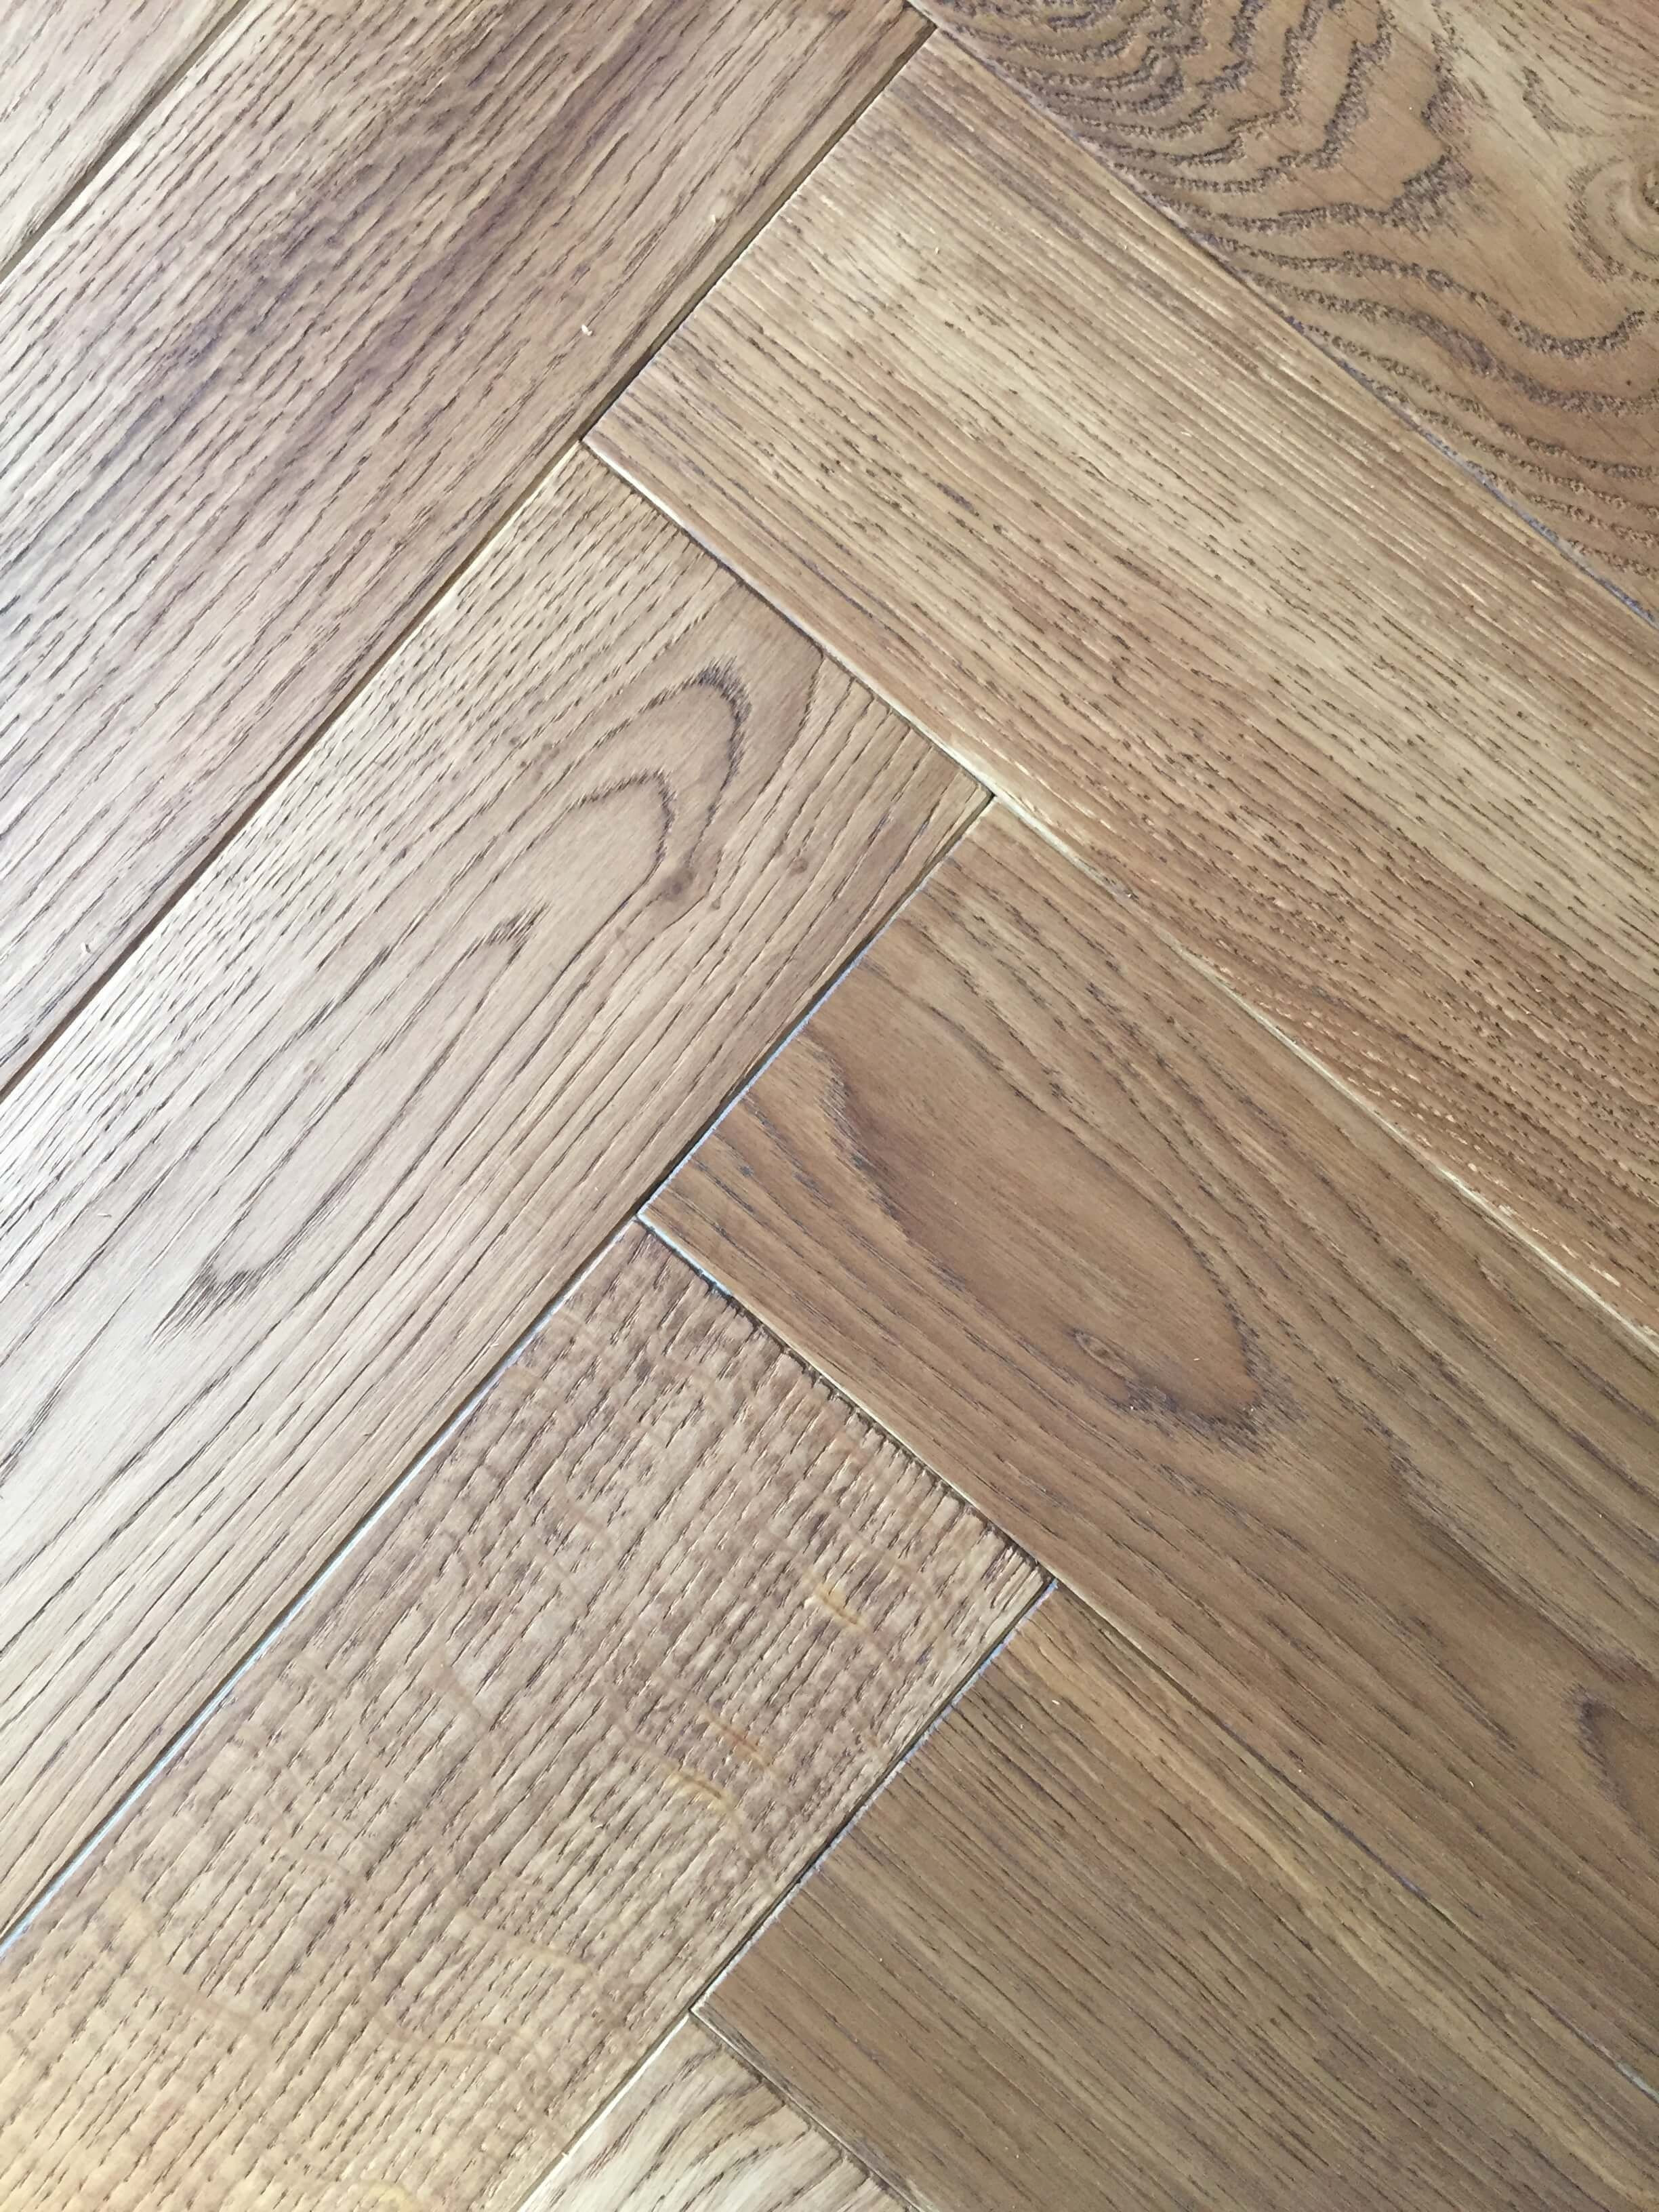 27 Unique Hardwood Floor Trends | Unique Flooring Ideas